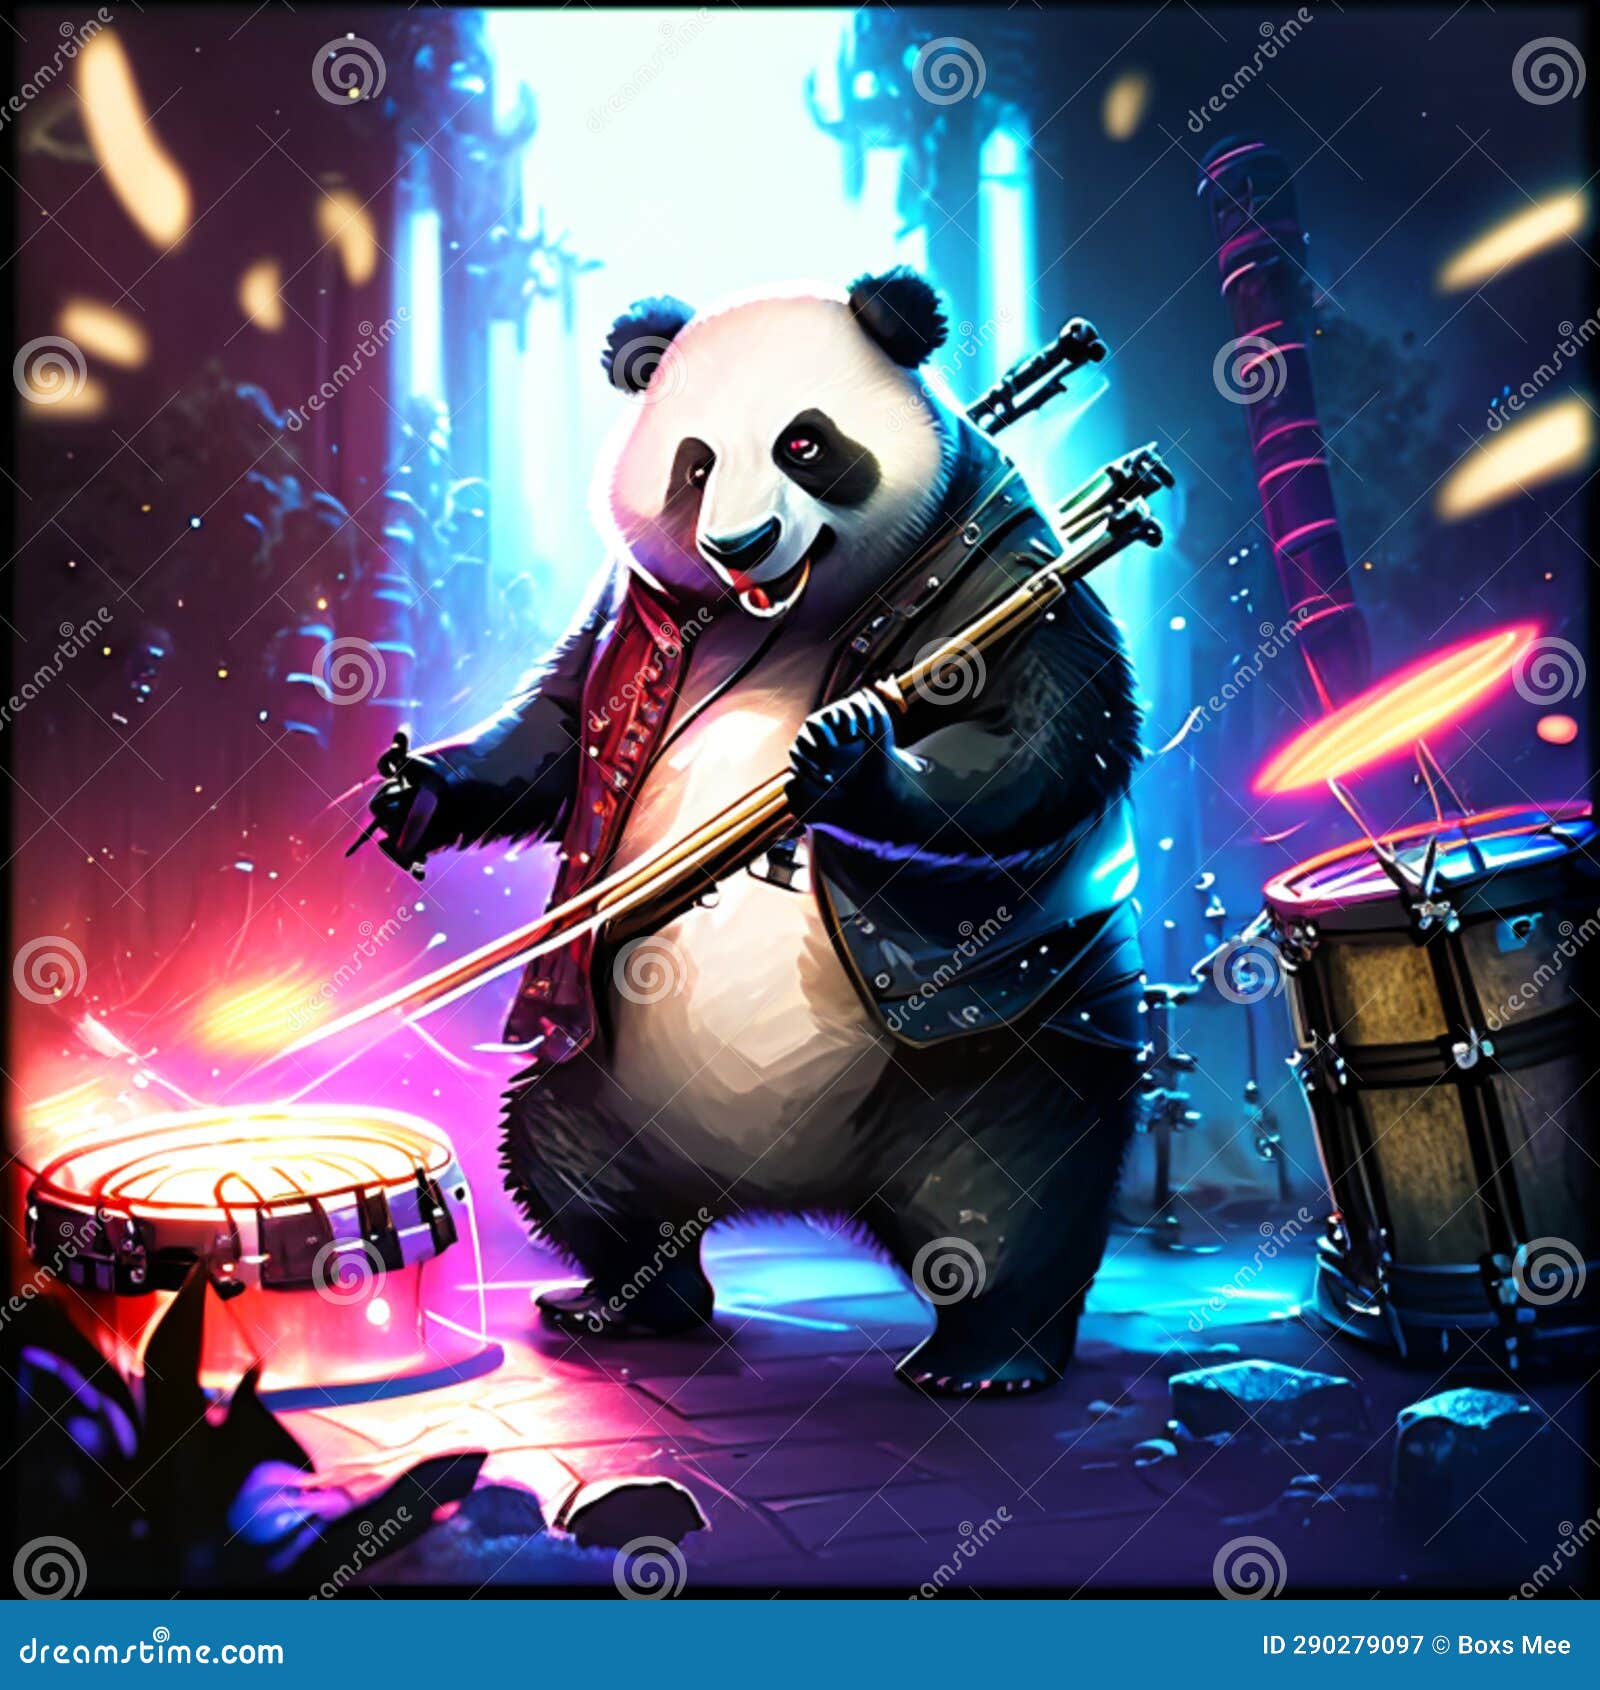 Panda drumming for rock band generative AI 22799015 Stock Photo at